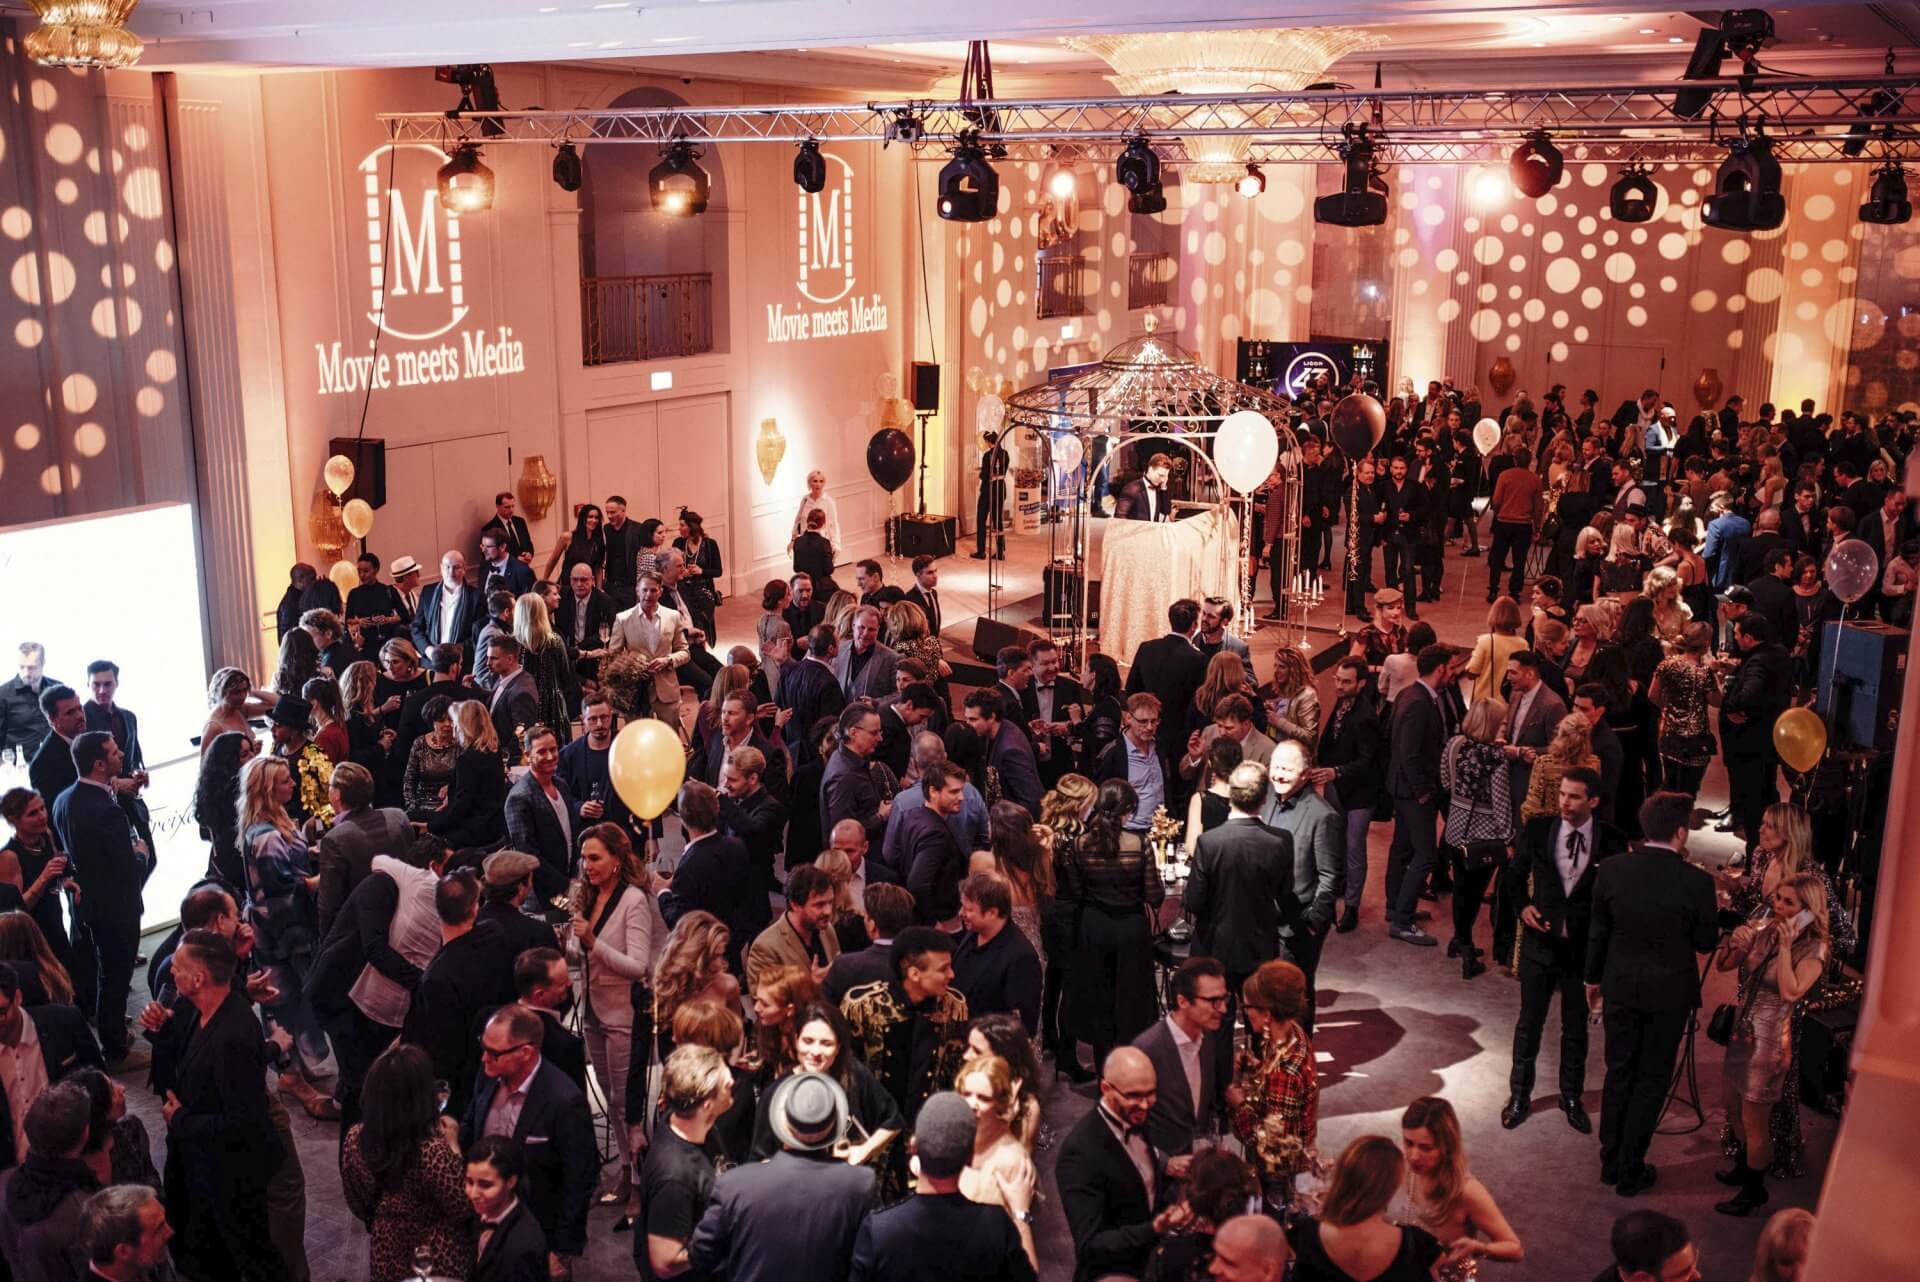 Eventfotografie für hochwertig Veranstaltungen und Gala-Events in Stuttgart © Offenblende / Michael MiWE